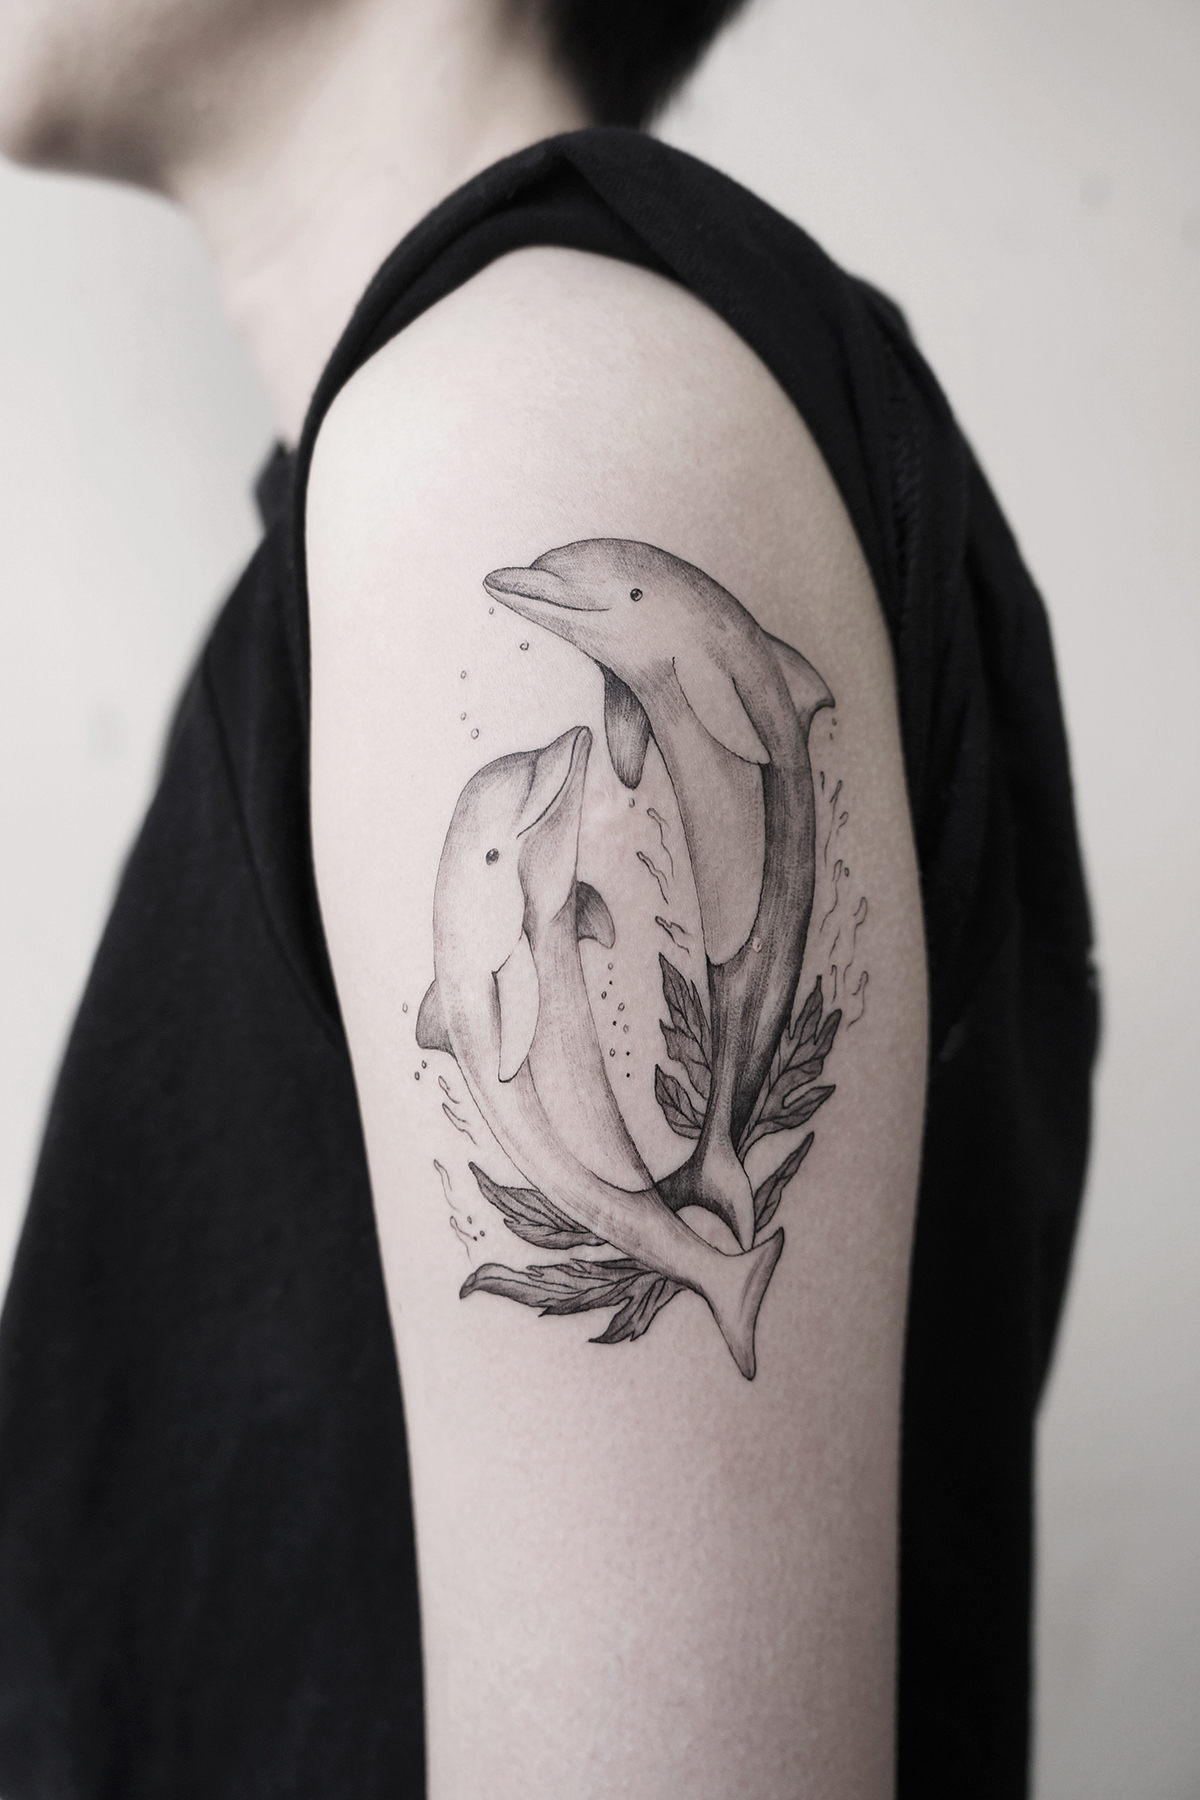 ideas de diseños tatuajes para hombres en el brazo, tatuaje de dos delfines en el brazo, los mejores diseños de tattoos de animales 